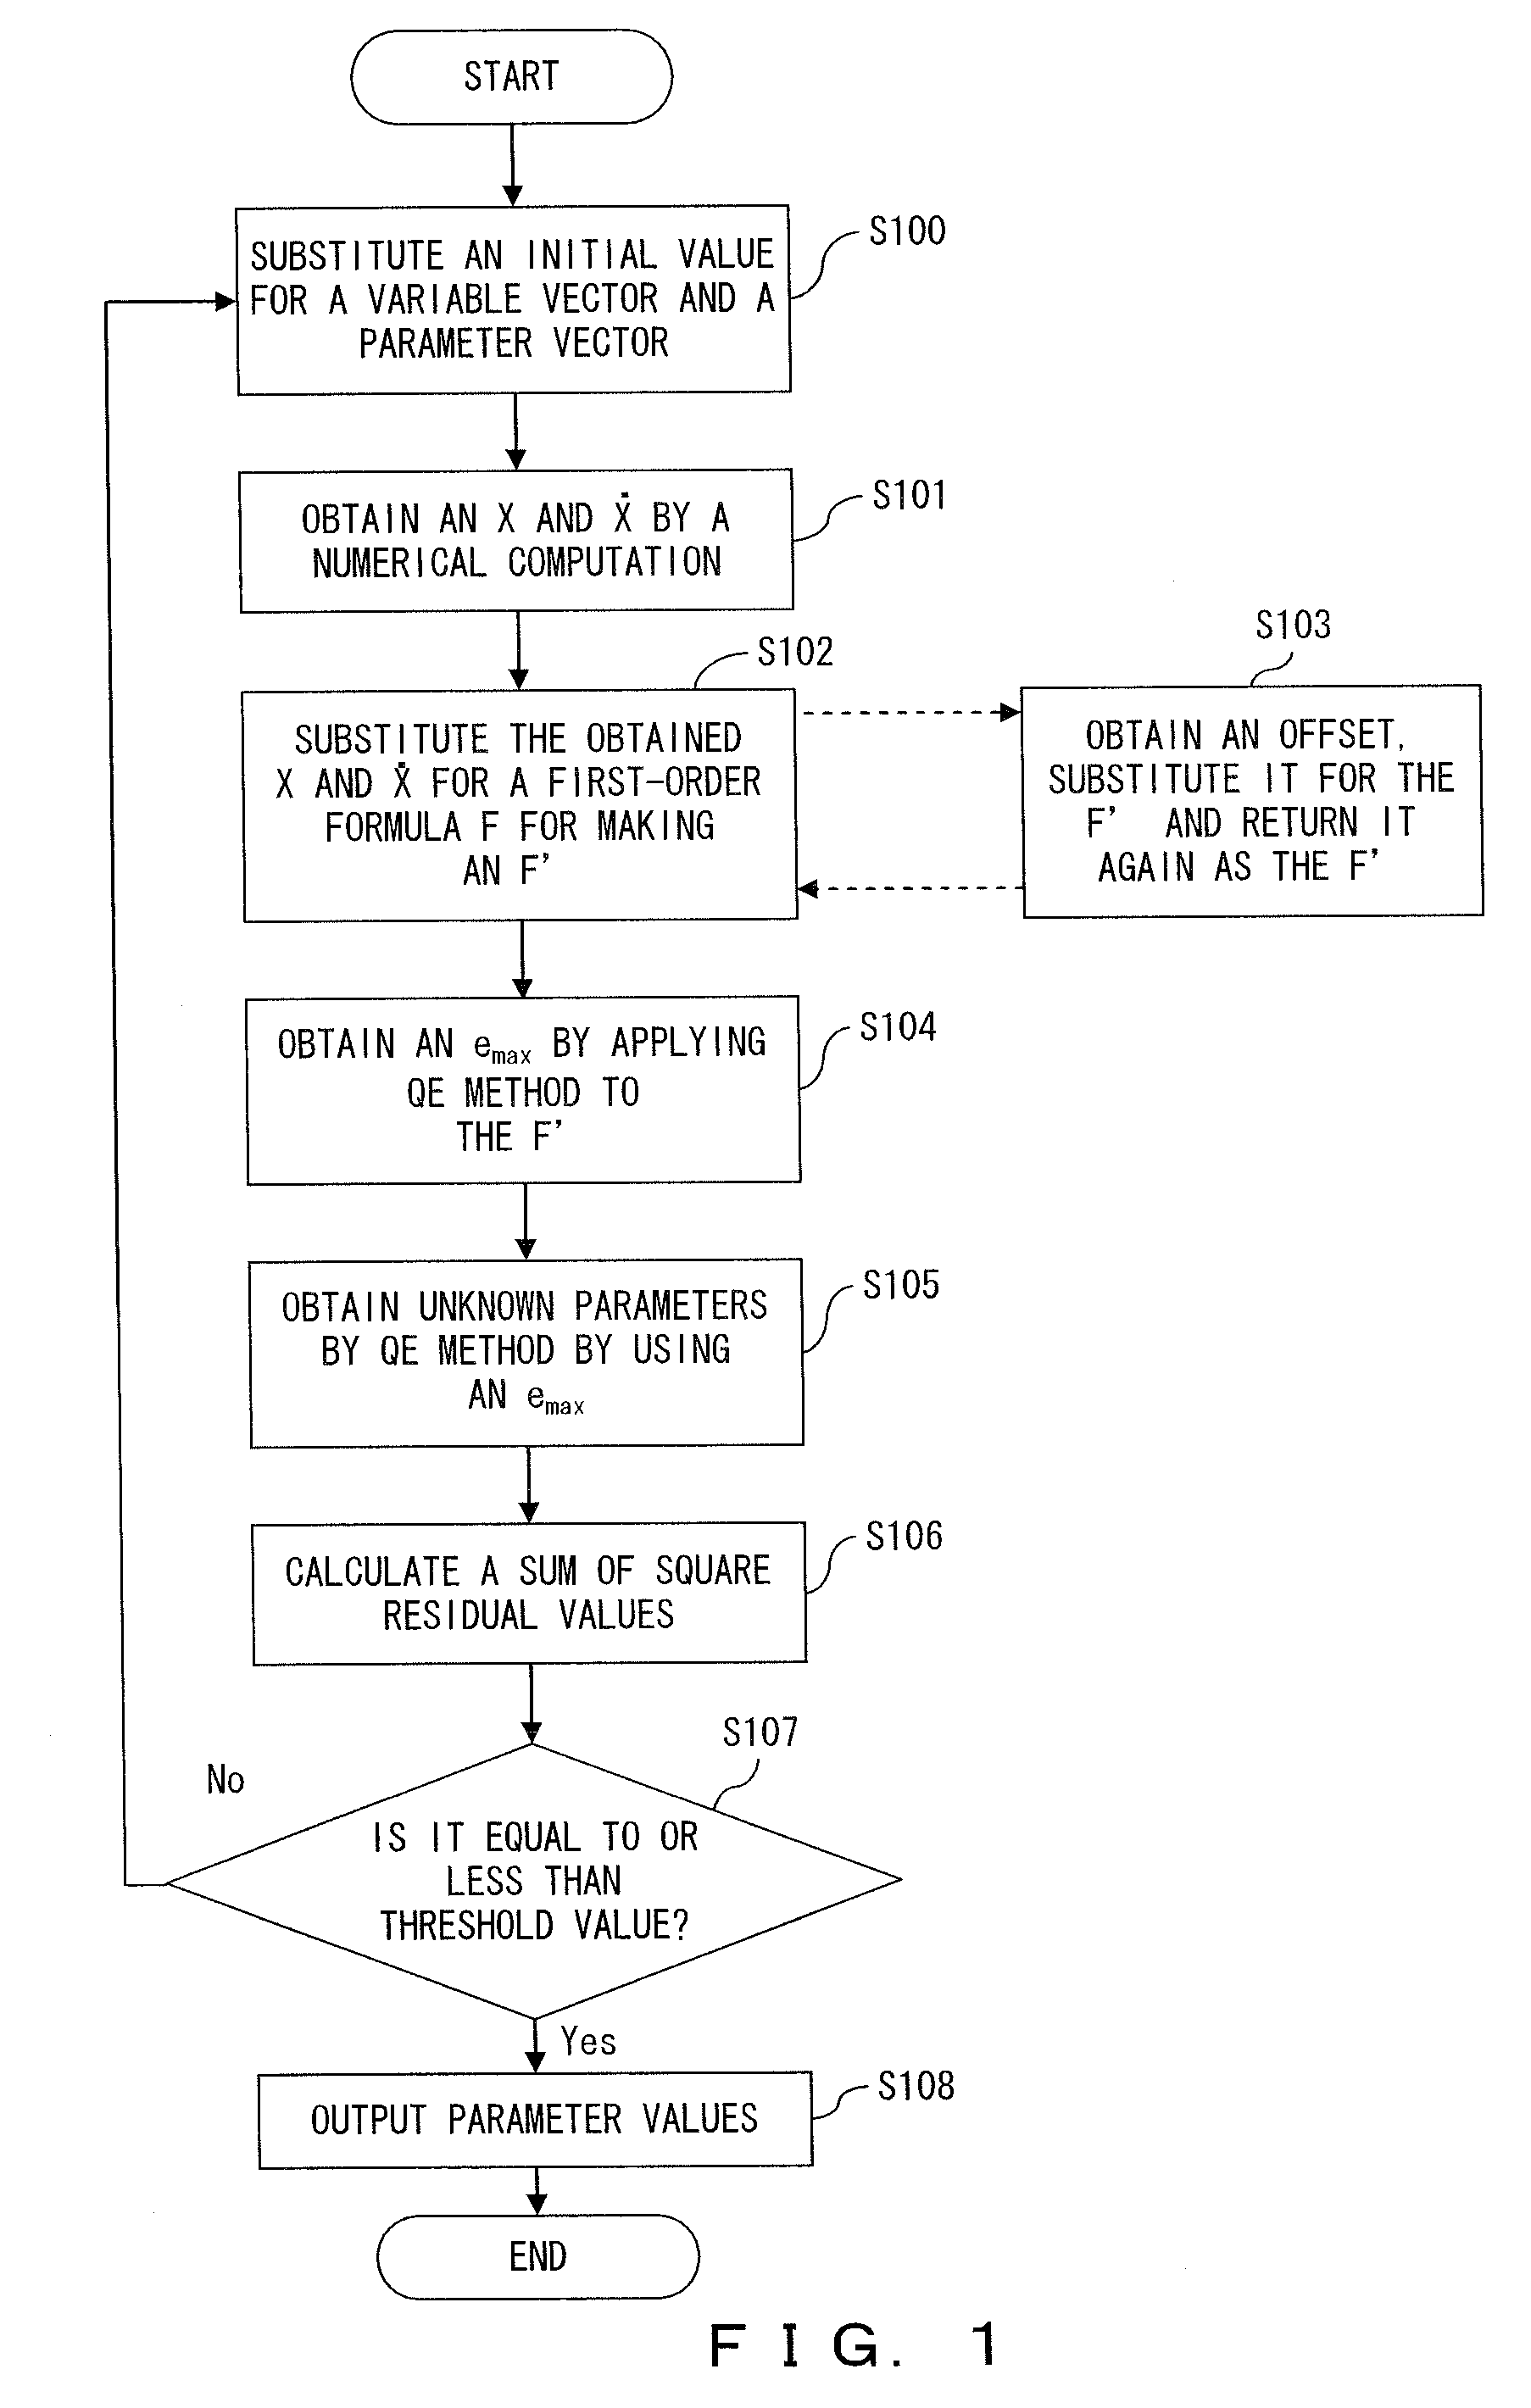 Model parameter determination apparatus and method